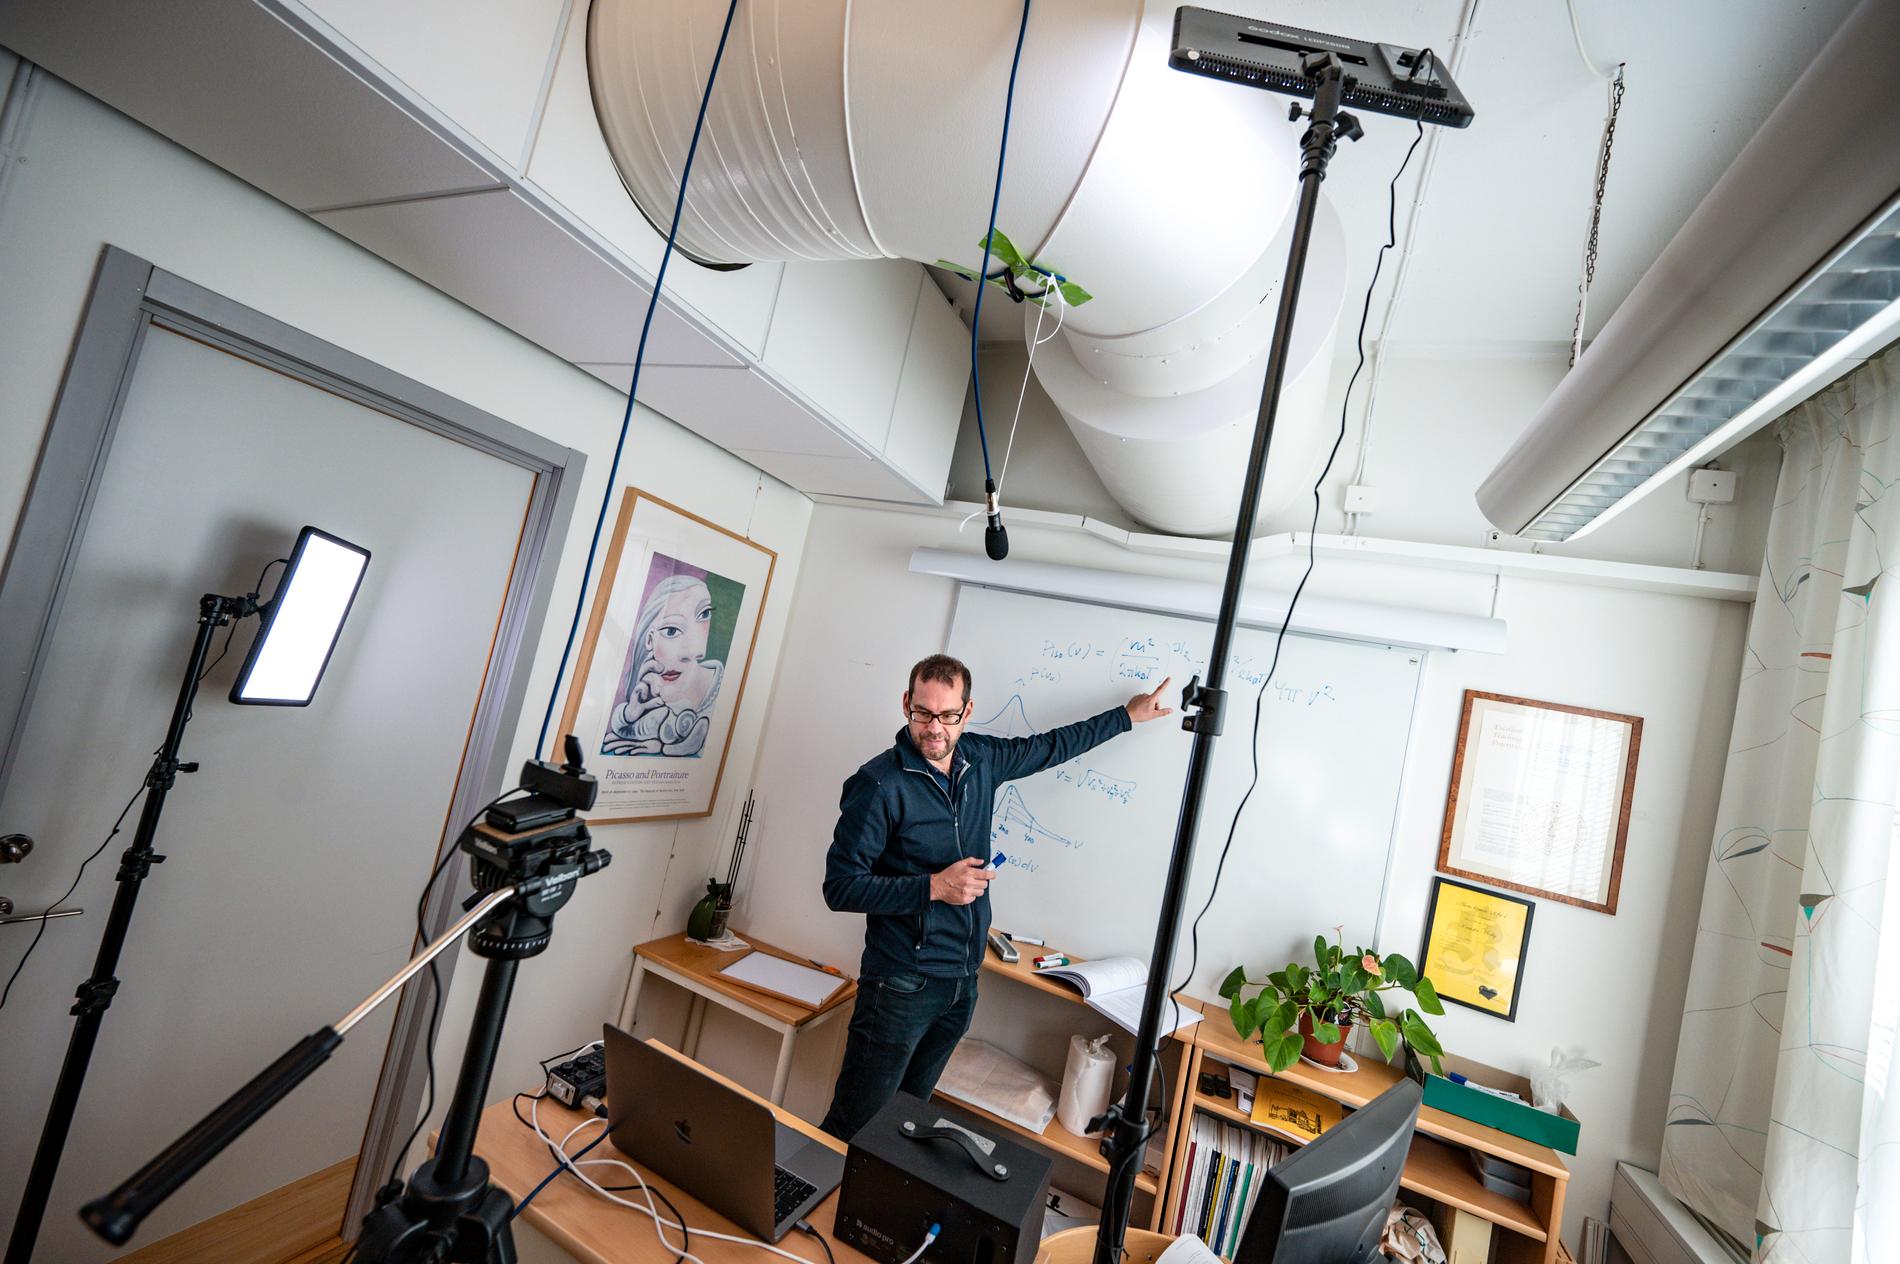 Universitetslektor Kristofer Modig har gjort om sitt arbetsrum på Kemicentrum i Lund till en liten studio. Han kan ha föreläsning för 100 studenter på en gång, men ser bara 18 av dem åt gången på små bilder på dataskärmen.